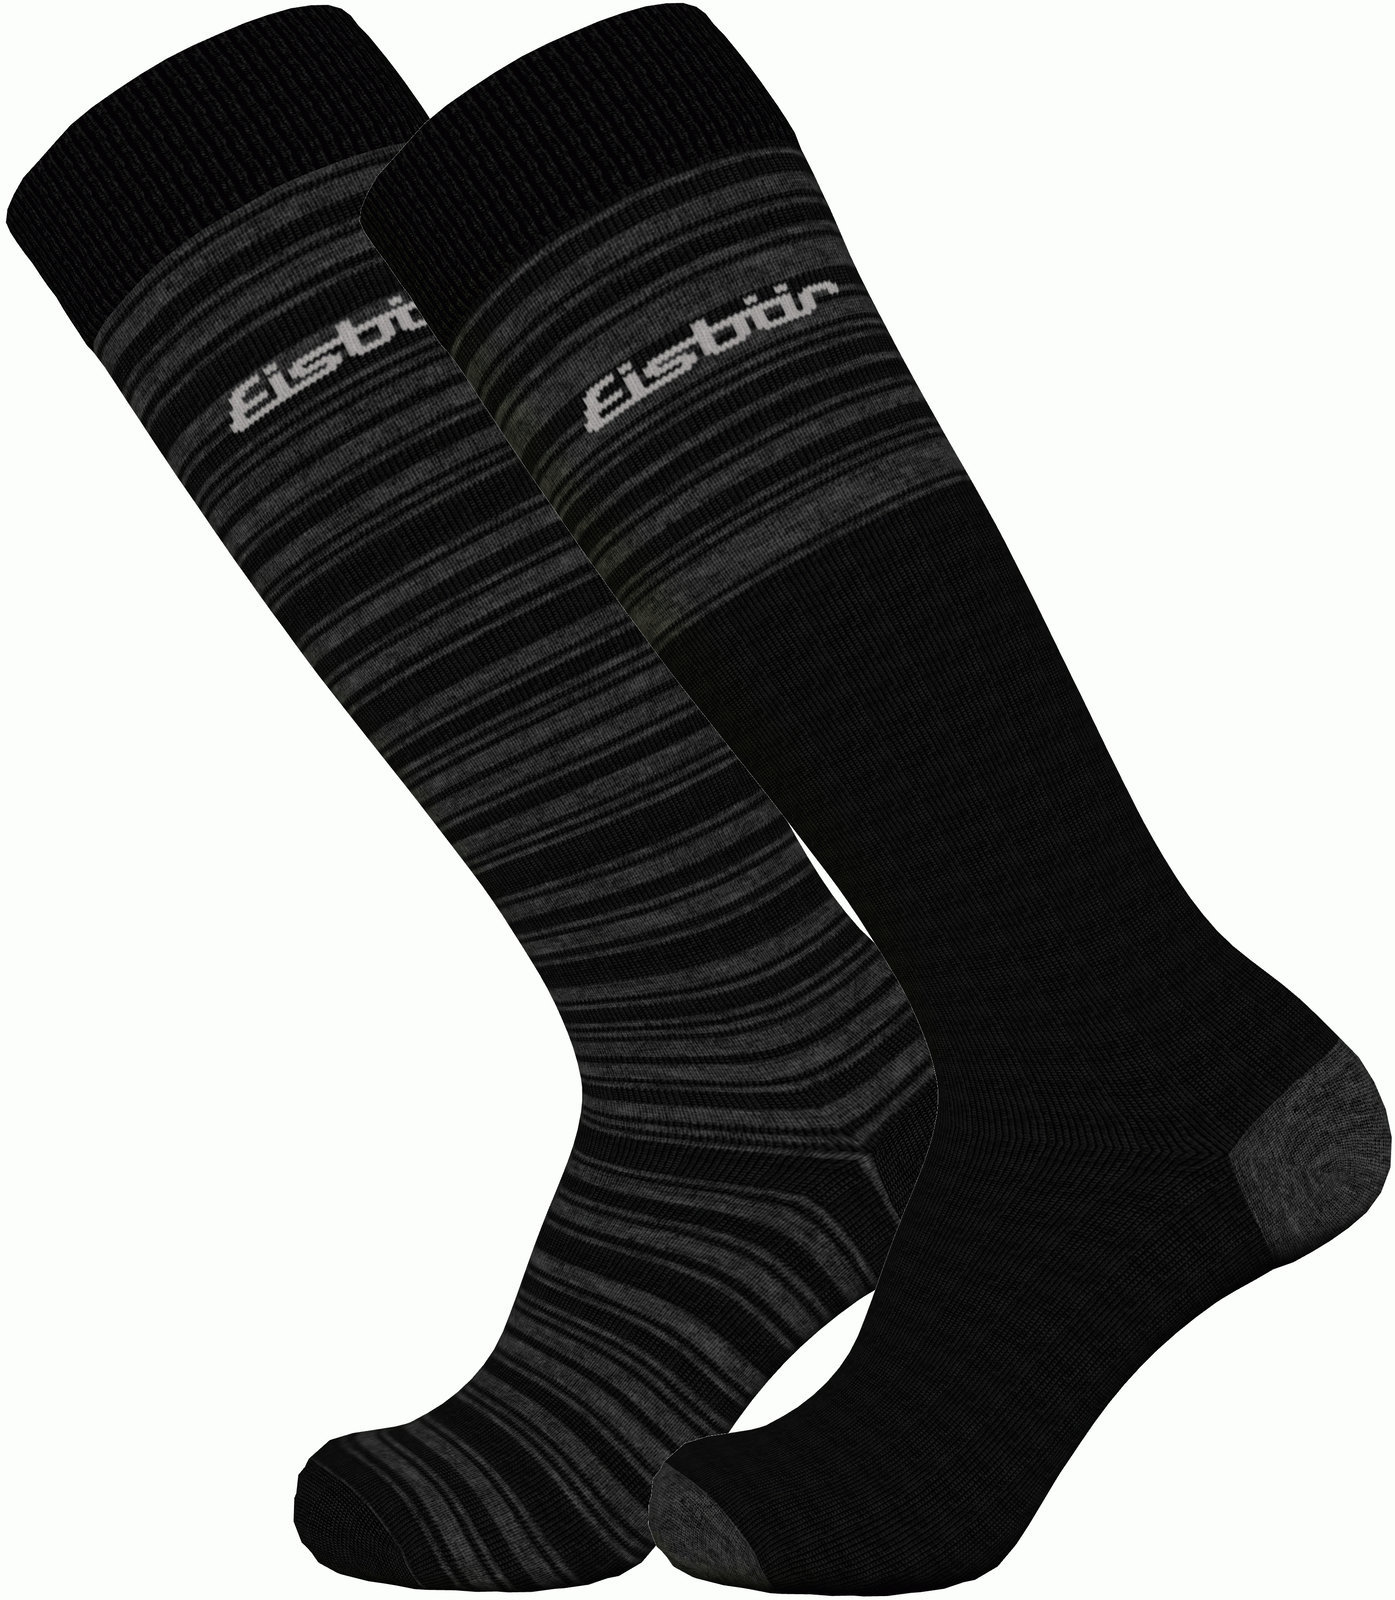 Ski Socks Eisbär Ski Comfort 2 Pack Black/Grey 35-38